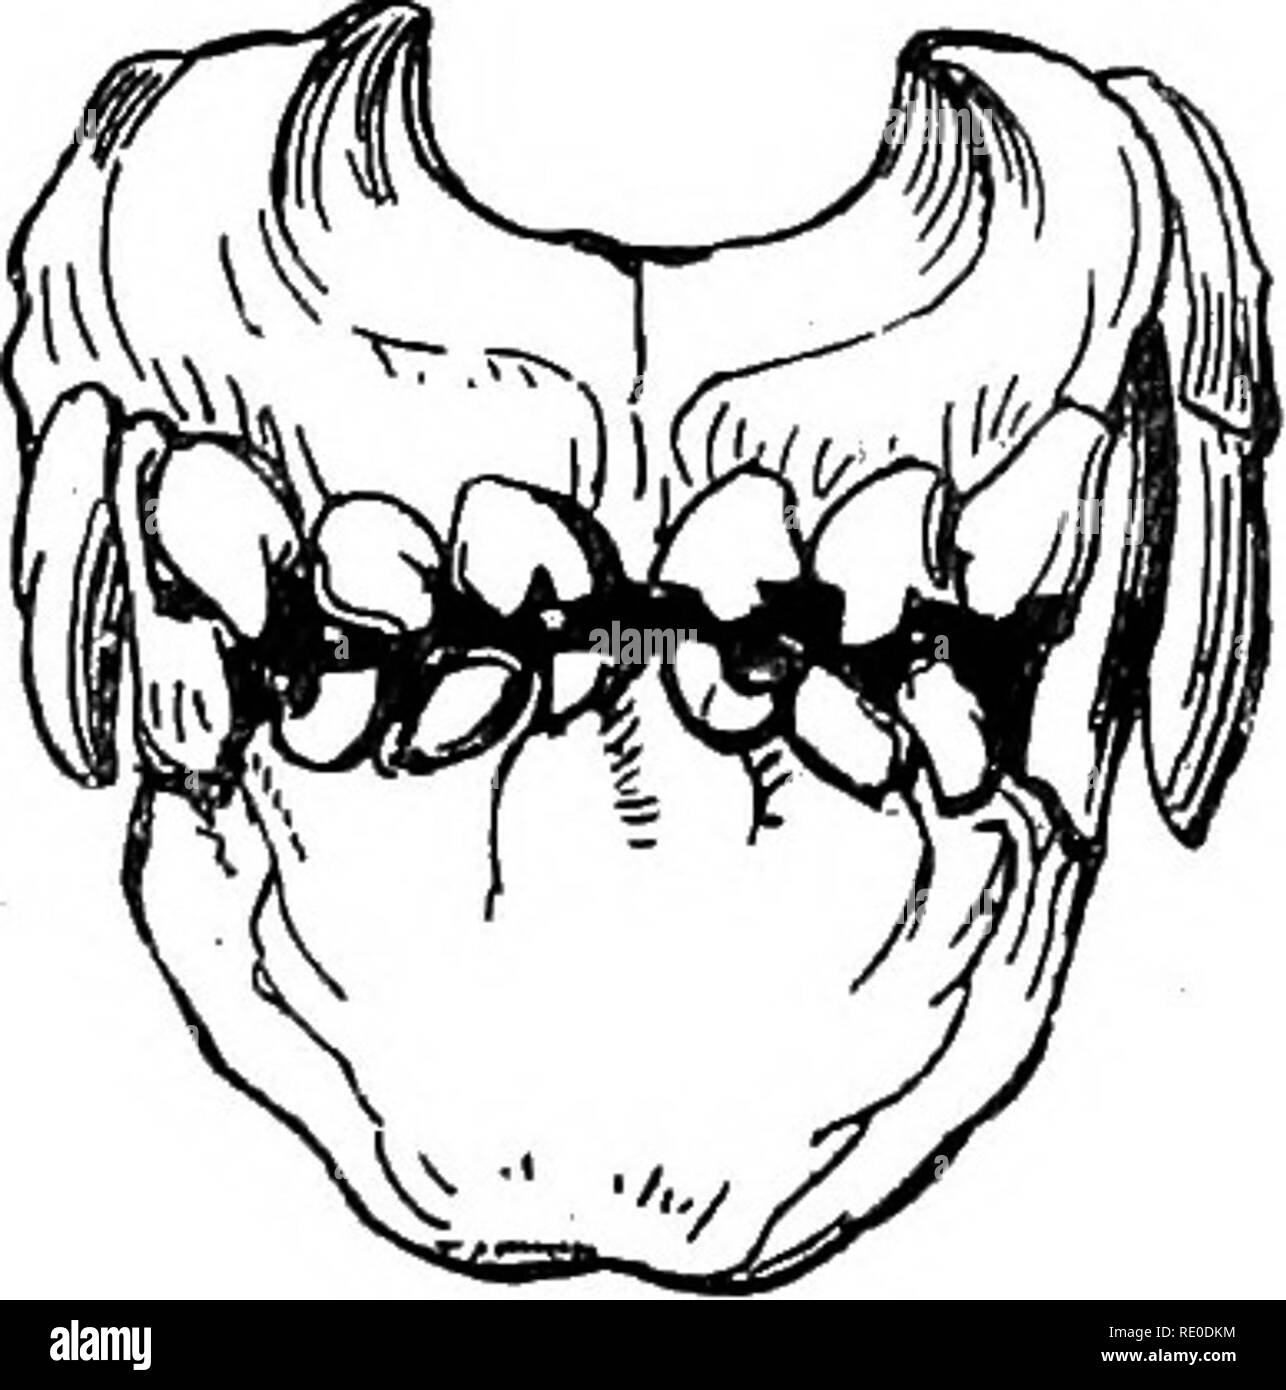 La gestión y enfermedades del perro. Los perros. Capítulo III. Enfermedades  de la boca y la lengua. La dentición, dientes cariados, tártara, aftas,  glositis ULCET^S, Blain, parálisis, faringitis, salivación. La dentadura.